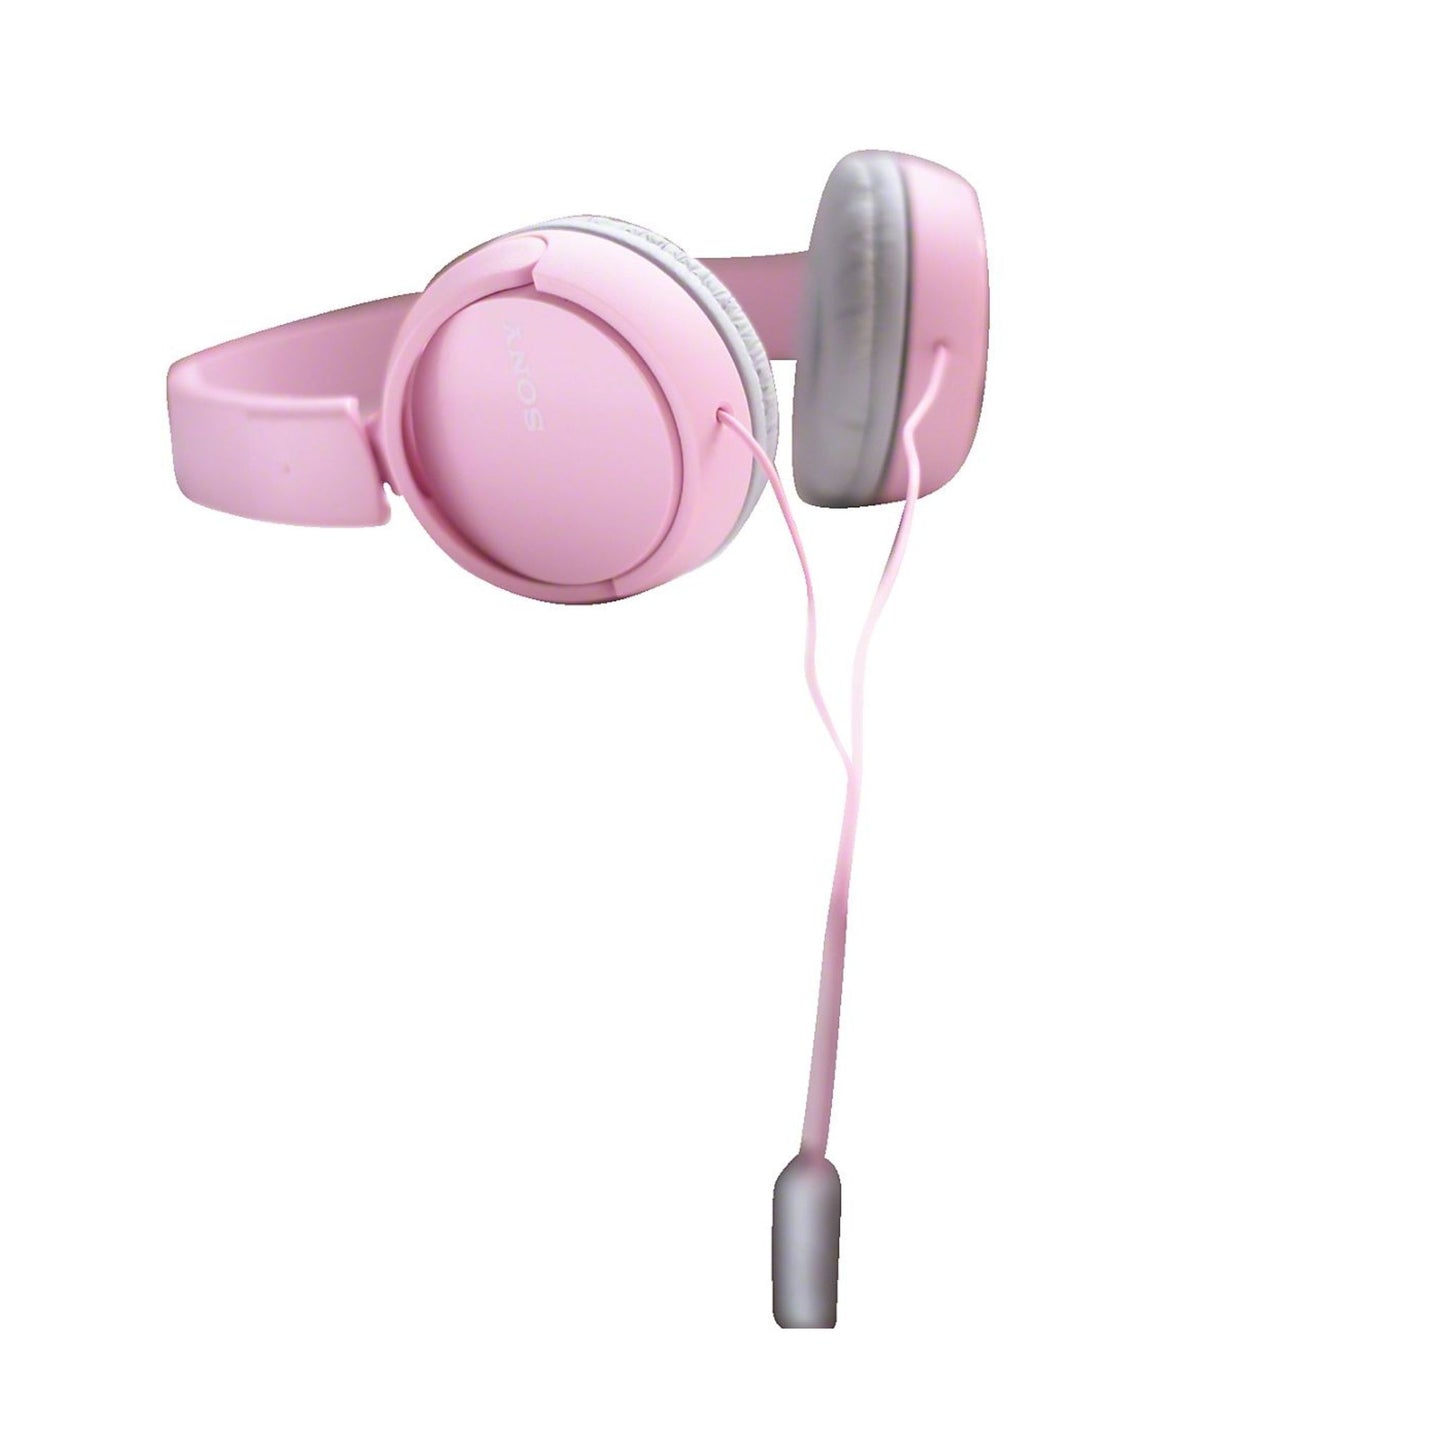 SONY MDR-ZX110AP, On-ear Kopfhörer Pink